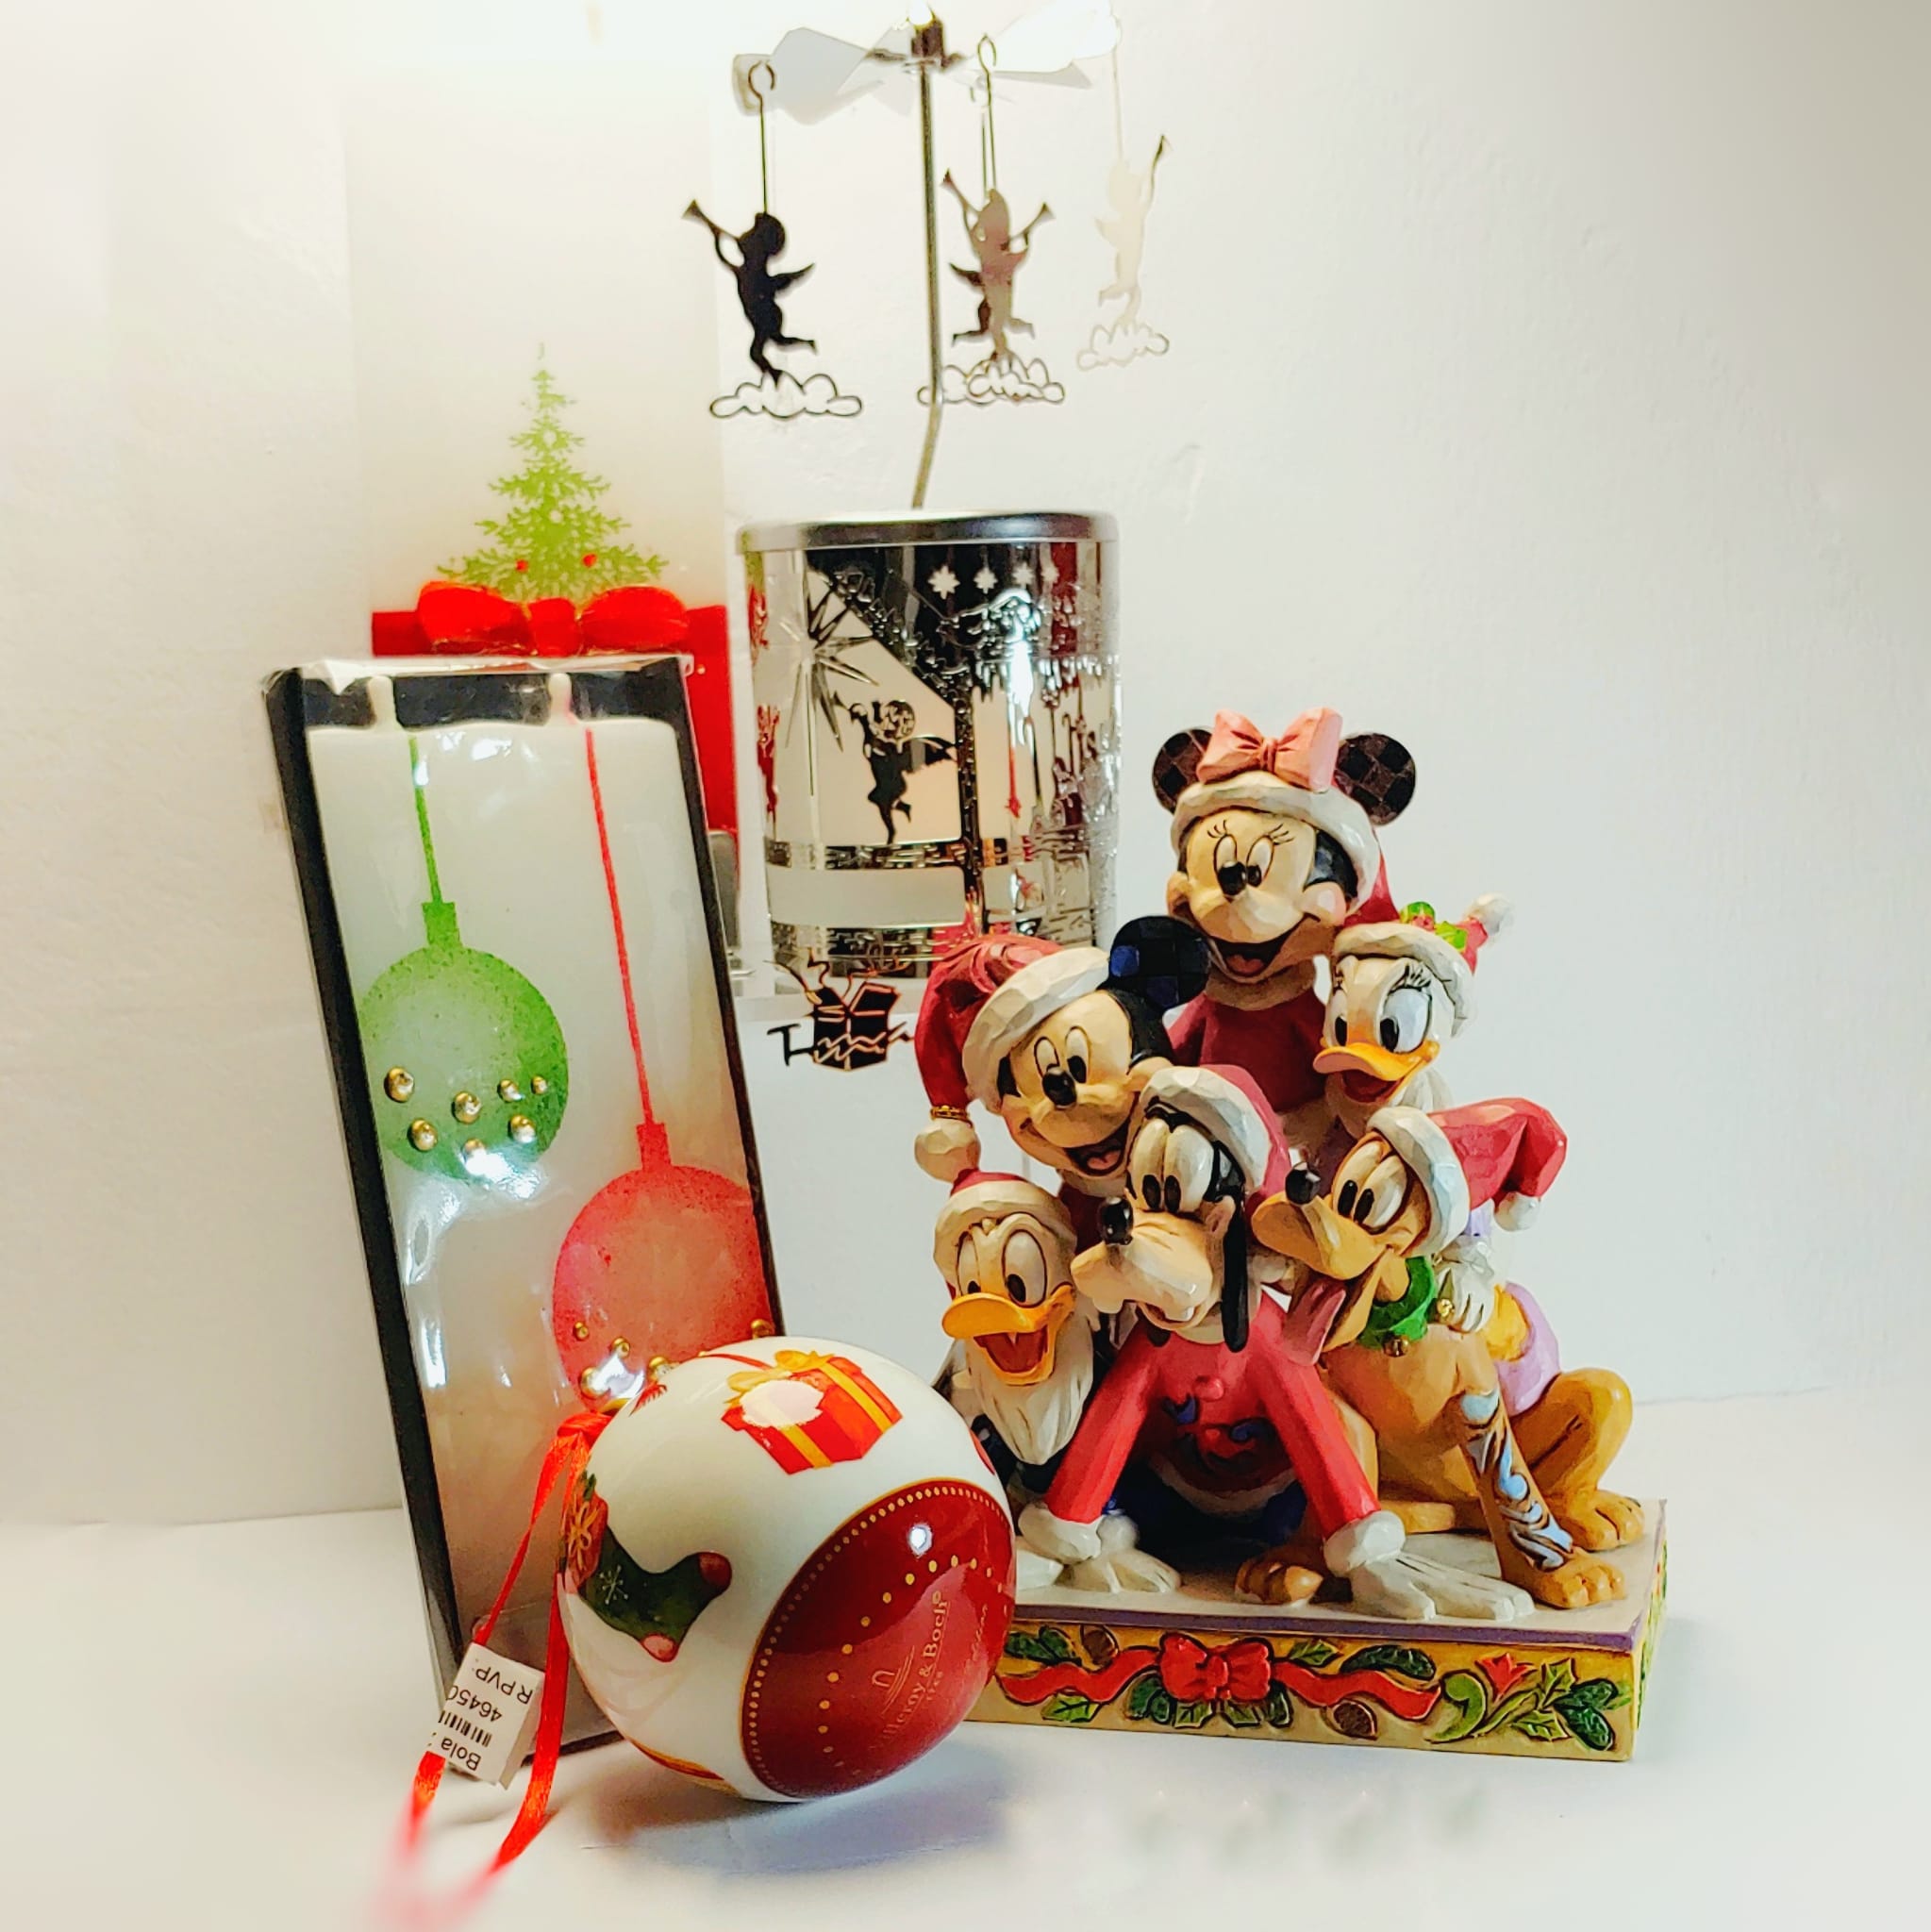 Hängendes Ornament „Sneeze“, Jim Shore – Disney-Kollektionen -  Sammlerstücke, ,stilvolle GESCHENKE kunsthandwerkliche Verarbeitung, Disney  Sammlungen, Sammlerstücke, ,stilvolle GESCHENKE kunsthandwerkliche  Verarbeitung, Weihnachtskollektion - T-mas